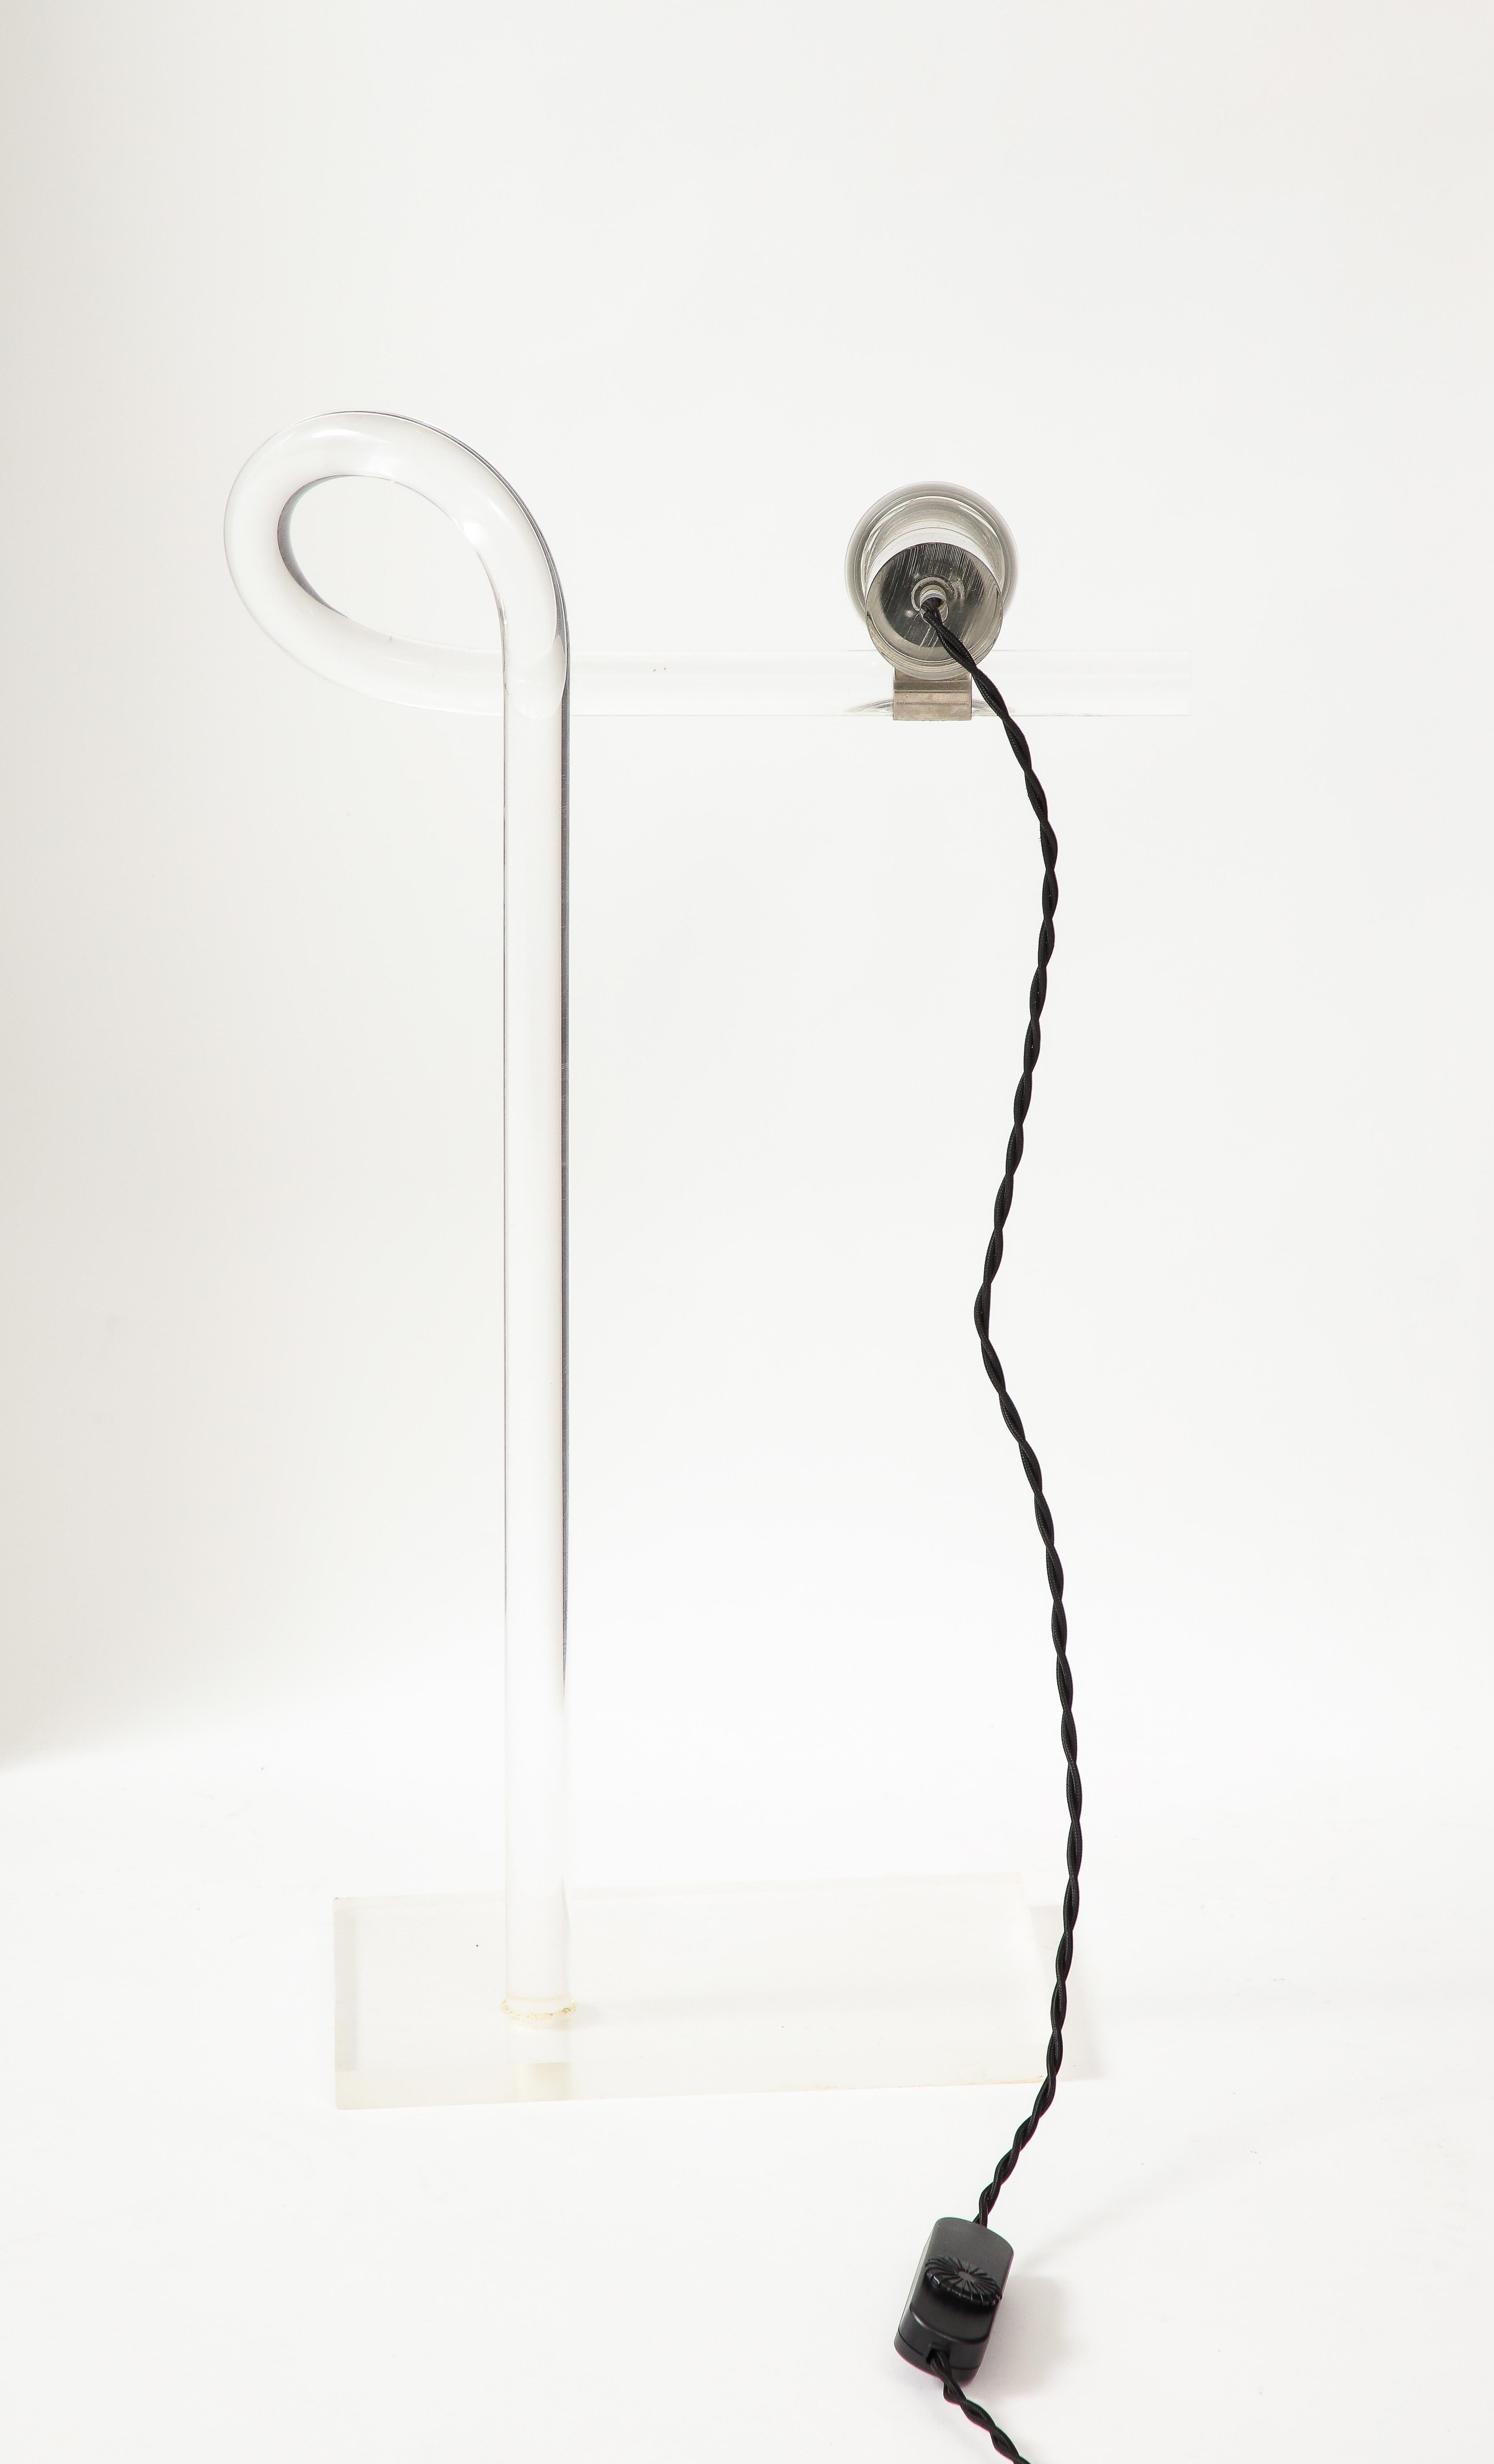 Rare lampe de table ou de bureau minimaliste par Peter Hamburger pour Knoll USA- 1970
Rayures superficielles sous la base. Sinon en bon état. Cette lampe a été recâblée pour être utilisée aux Etats-Unis.
Les dimensions sont les suivantes :